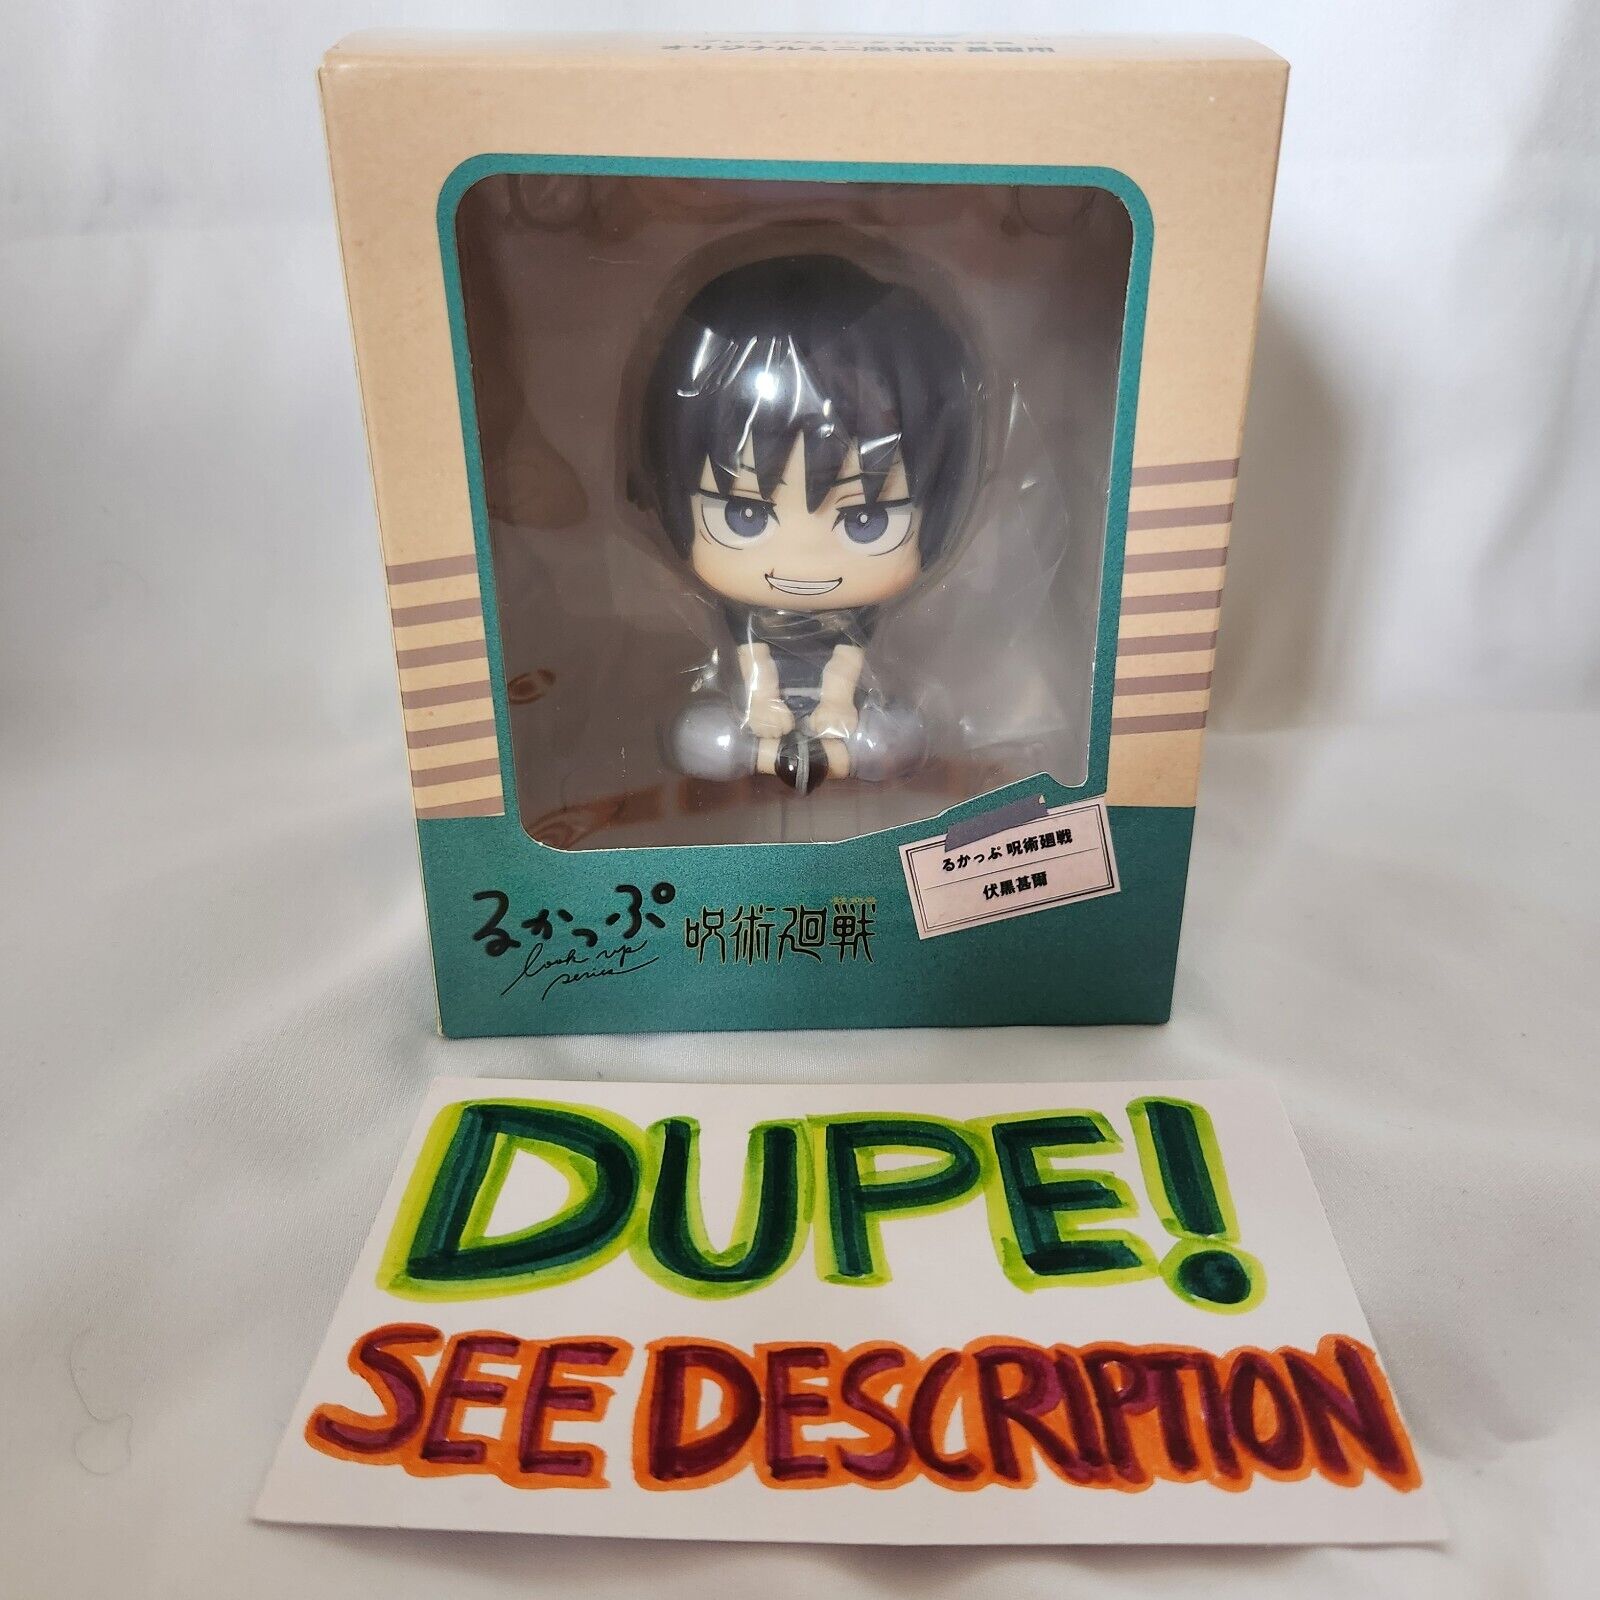 DUPE Toji Fushiguro Look Up Figure (BOX DAMAGED)